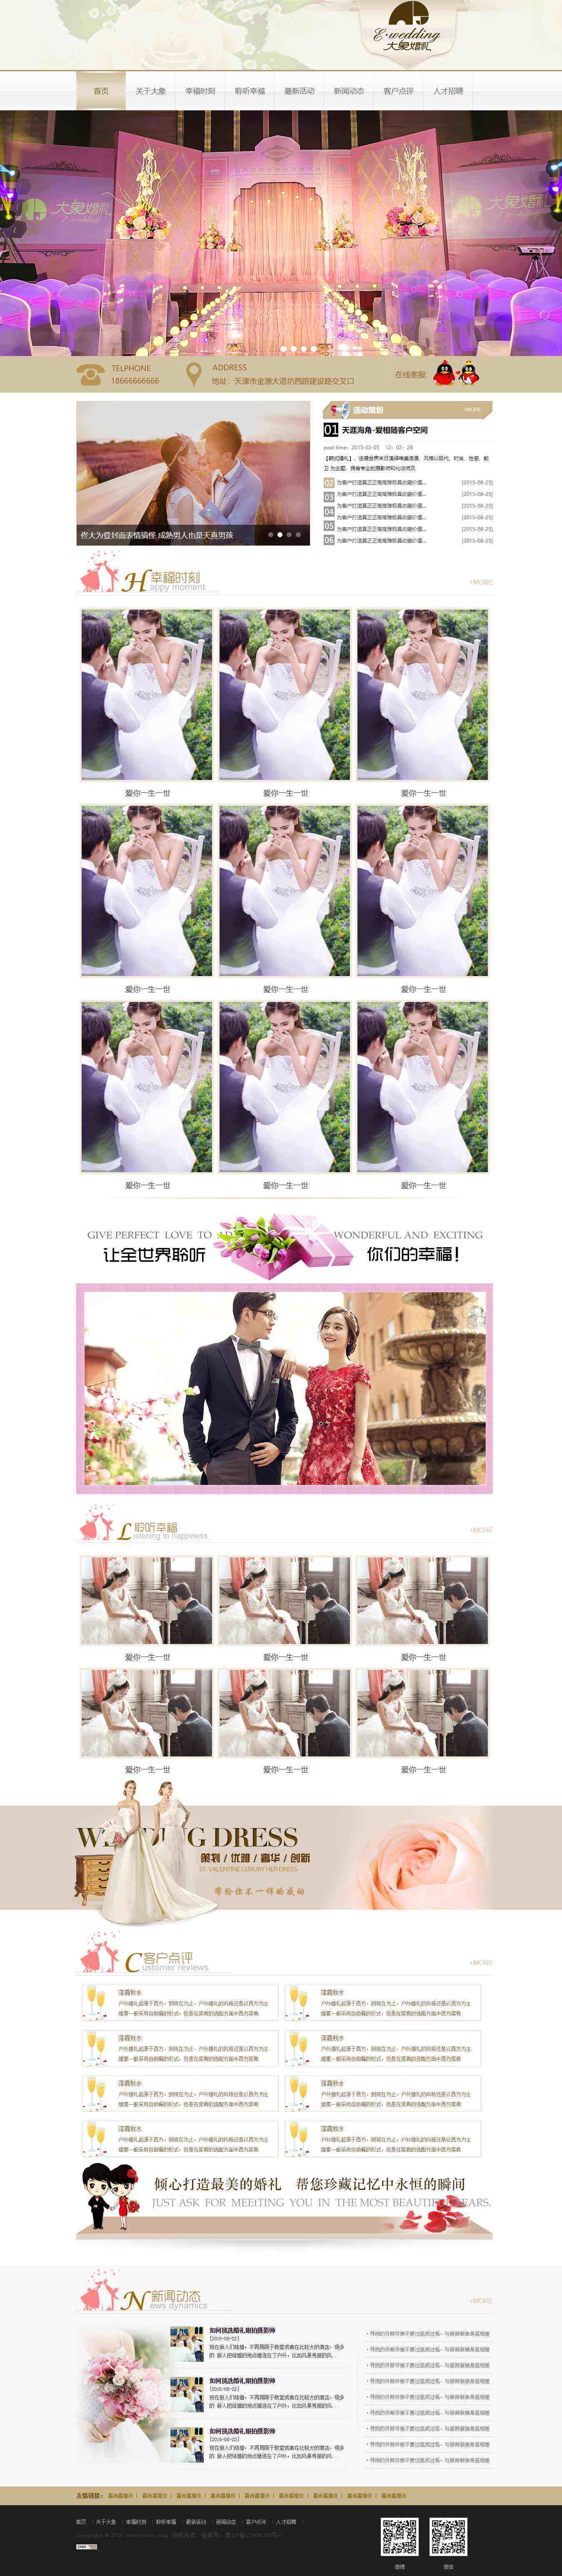 棕色简洁风格的婚庆婚礼策划企业网站源码下载